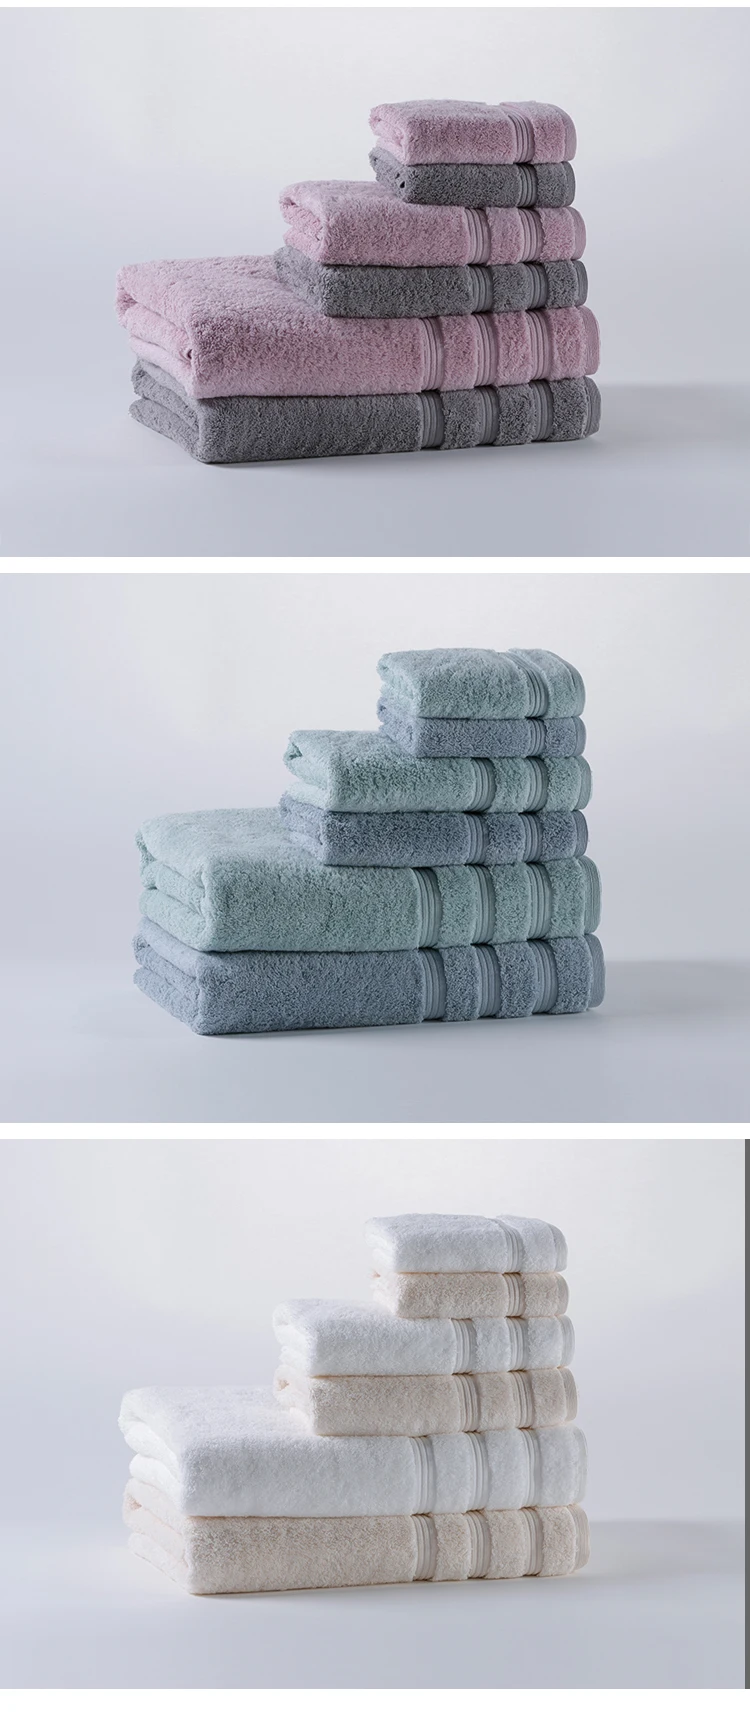 New Dobby Border Gesichtstuch, 100% Cotton Luxury Design Towel